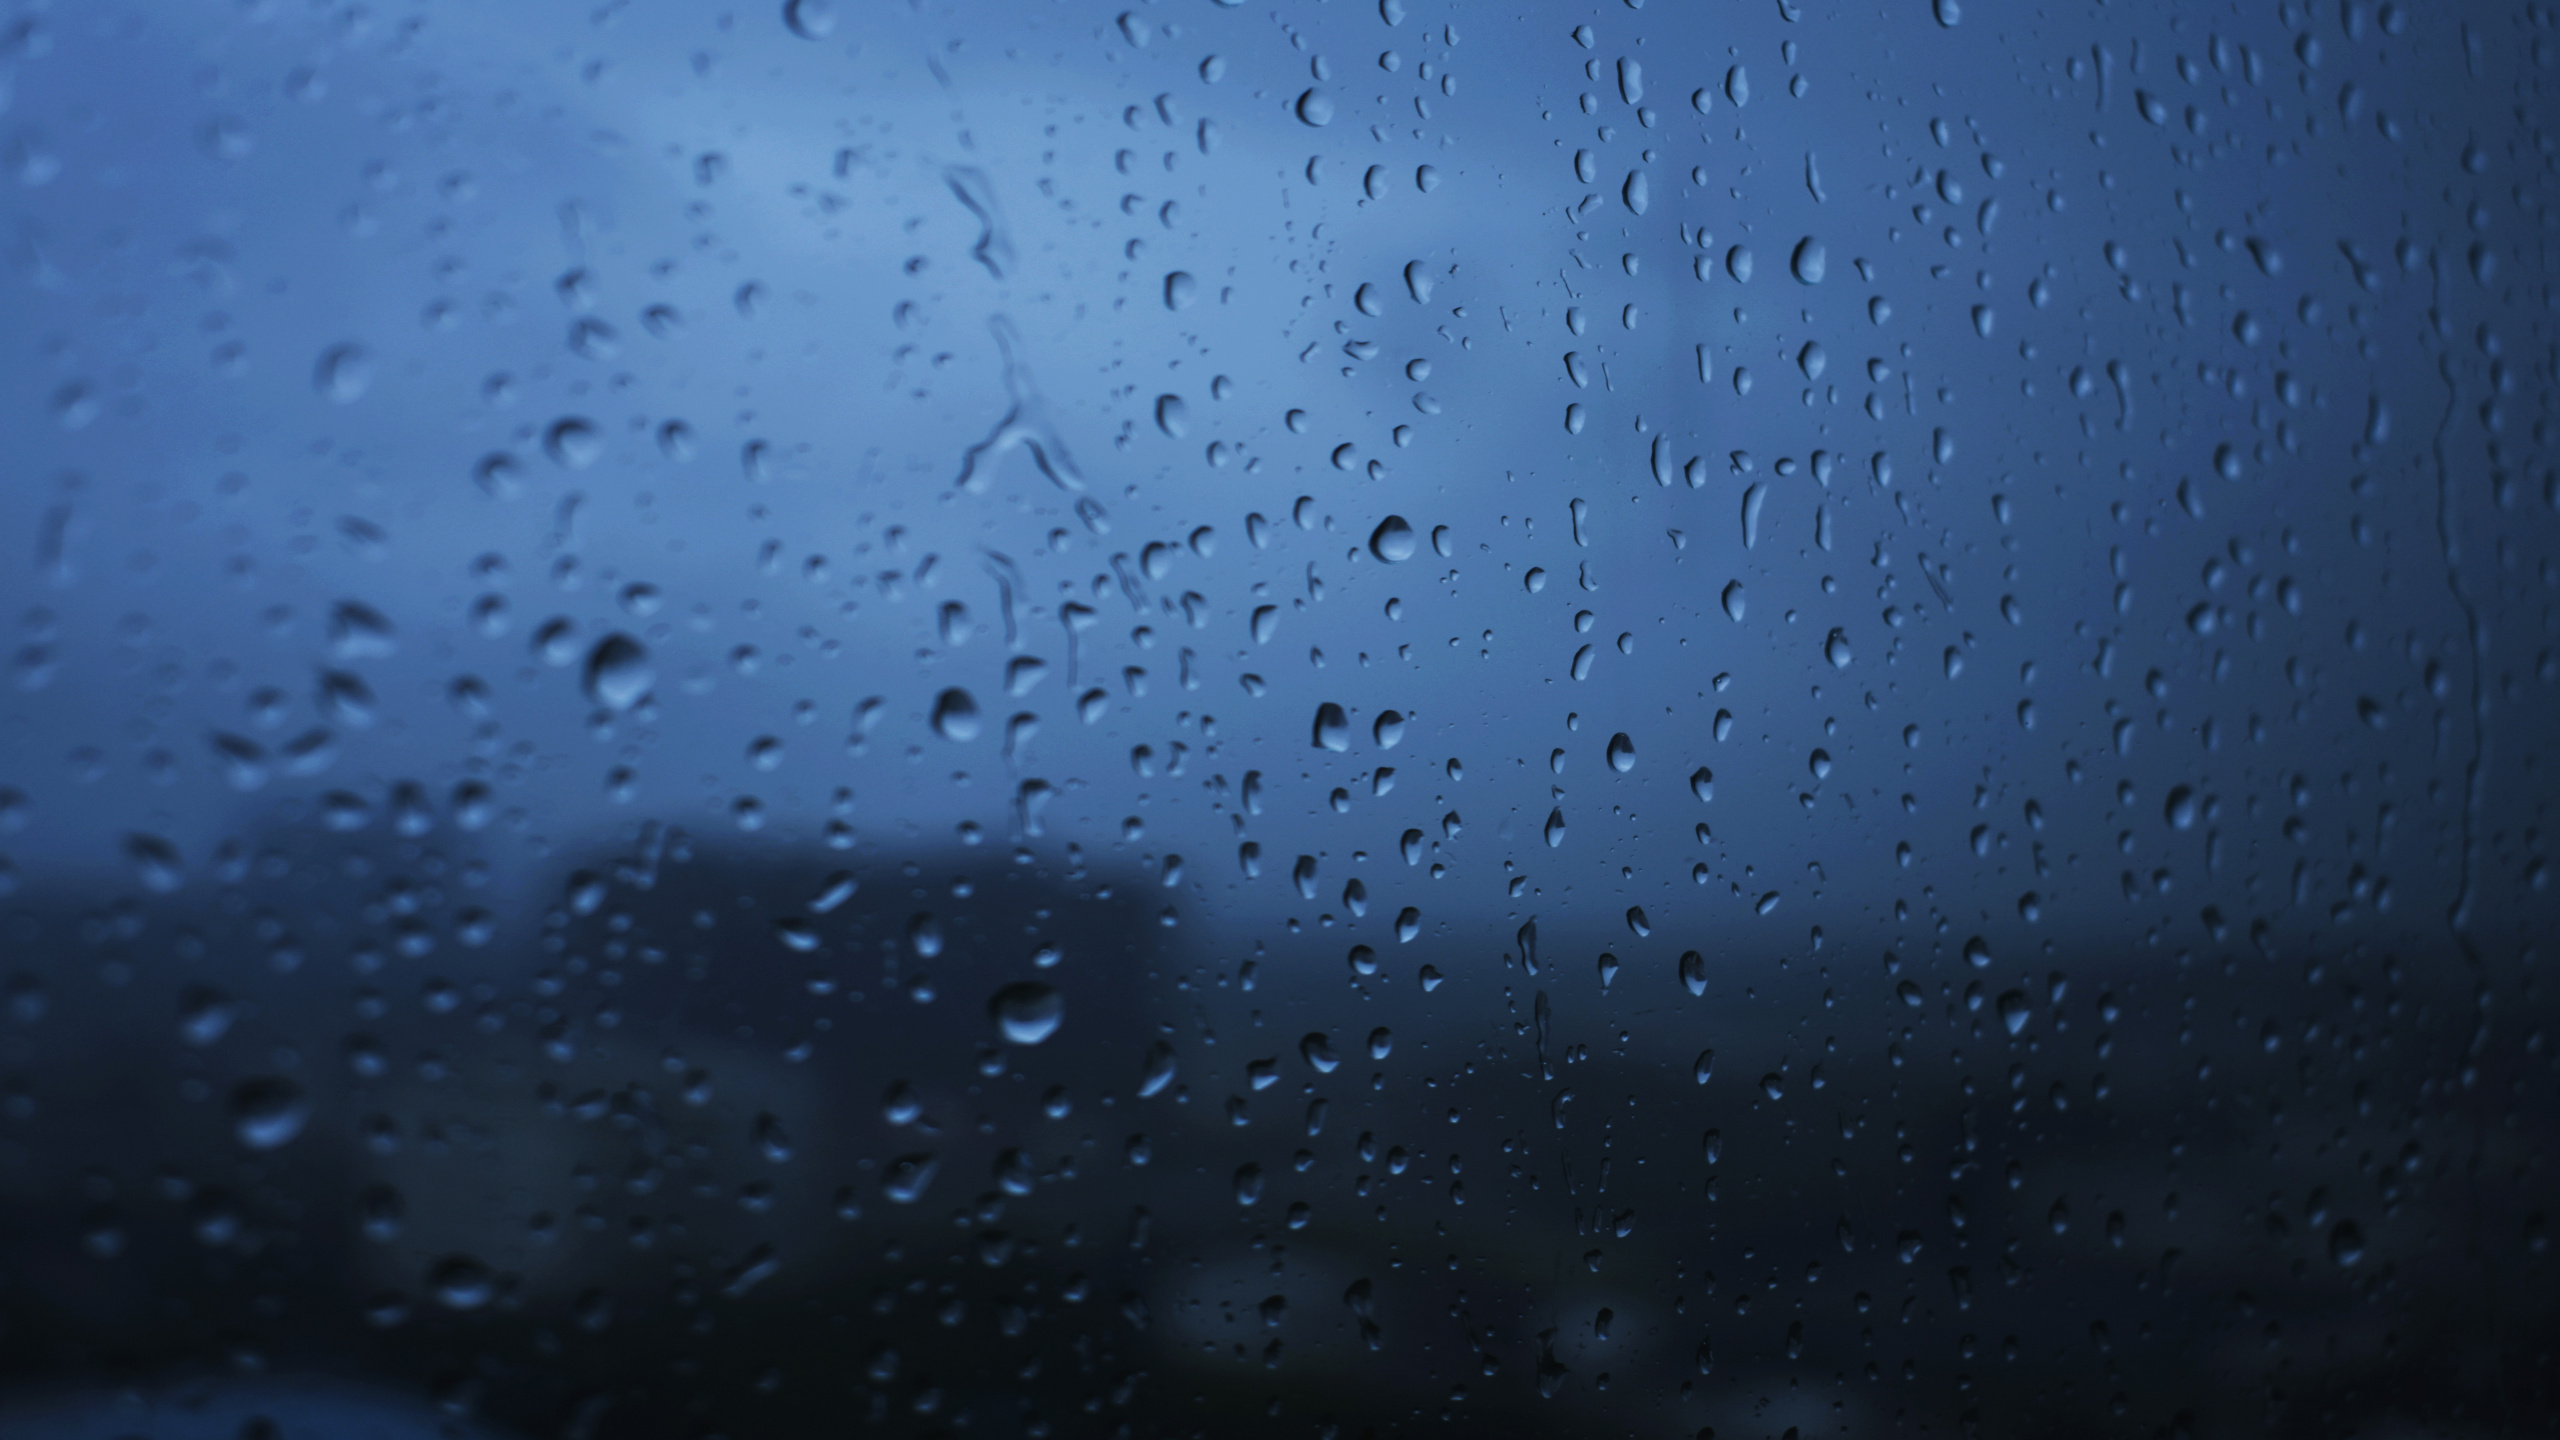 Tropfen, Regen, Blau, Wasser, Nieselregen. Wallpaper in 2560x1440 Resolution